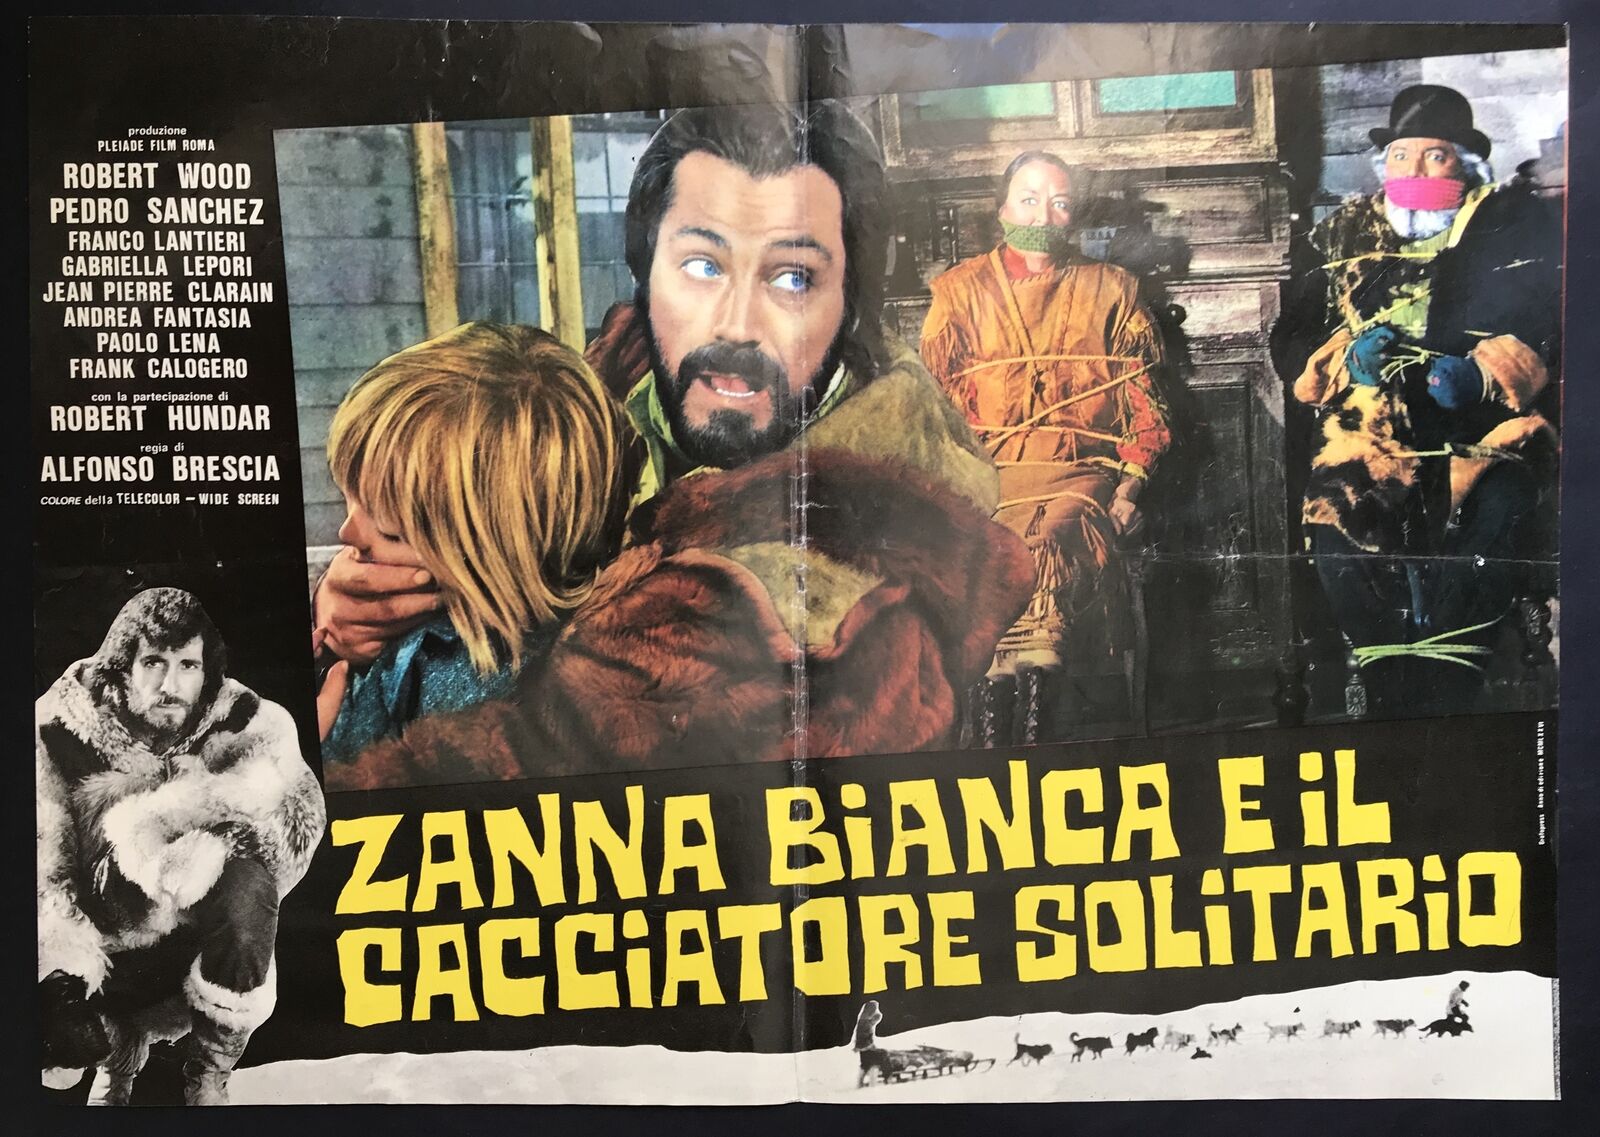 Zanna Bianca e il cacciatore solitario (1975) Screenshot 2